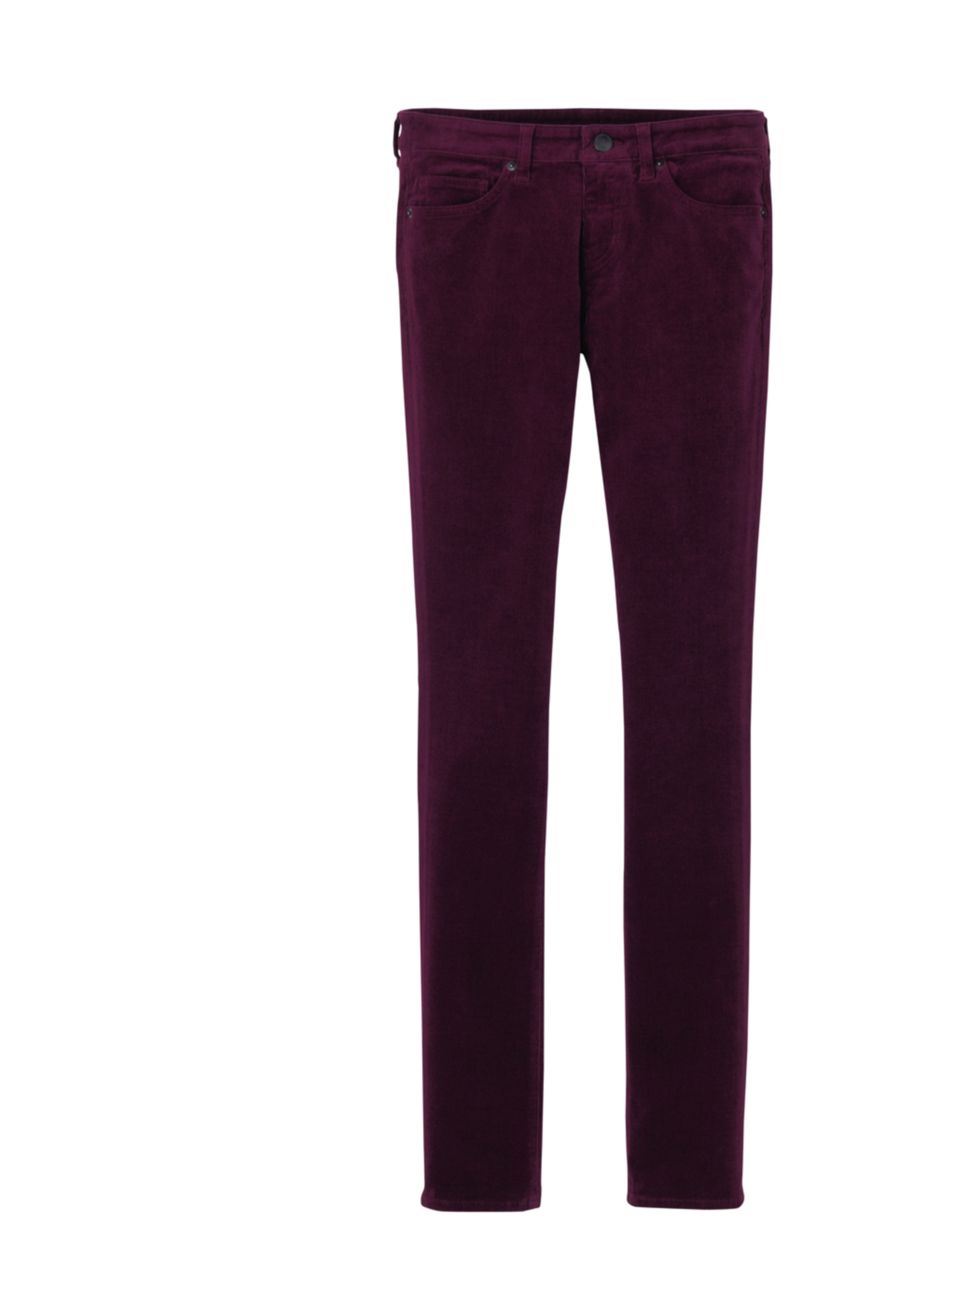 <p>Heres a savvy way to embrace the new season modern goth. Think glamorous not grungy, dark but luxurious, think deep plum coloured cords from Uniqlo <a href="http://www.uniqlo.com/uk/">Uniqlo</a> corduroy trousers, £14.90</p>